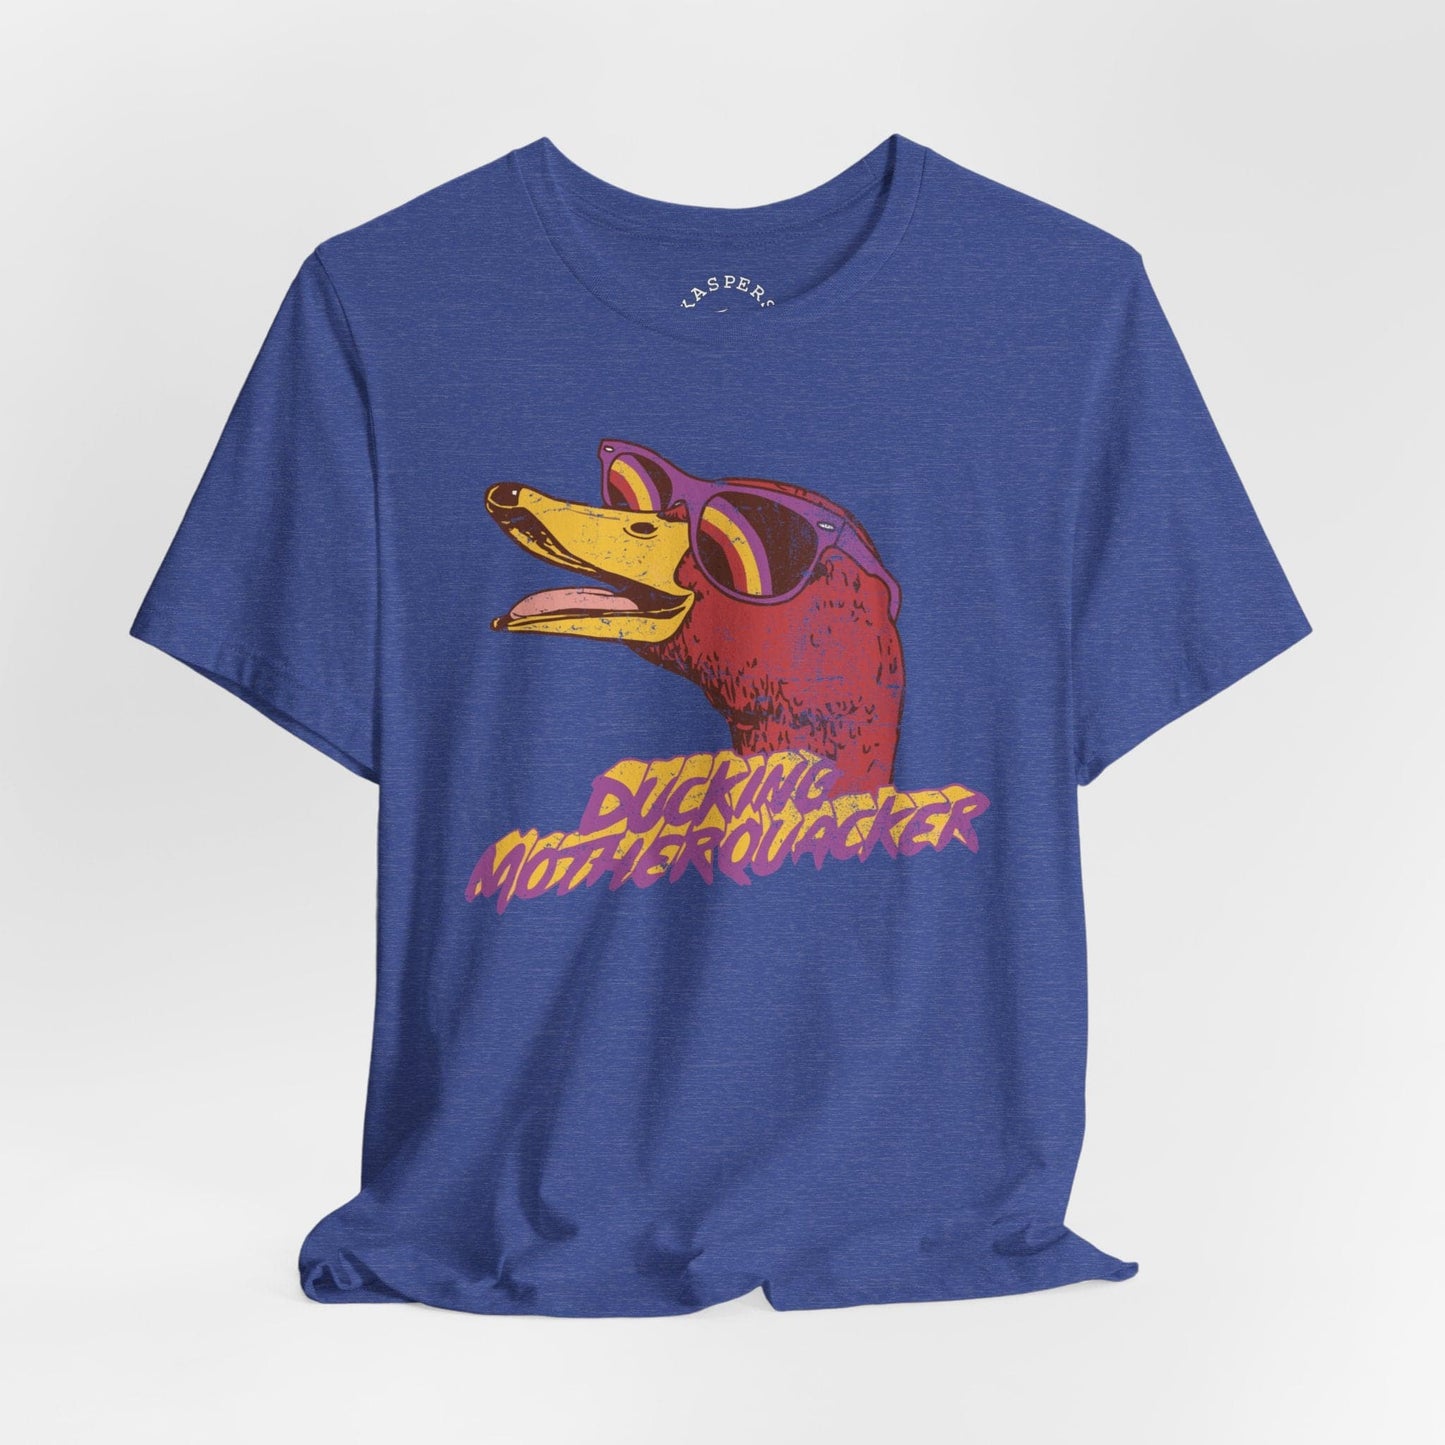 Ducking Motherquacker T-Shirt